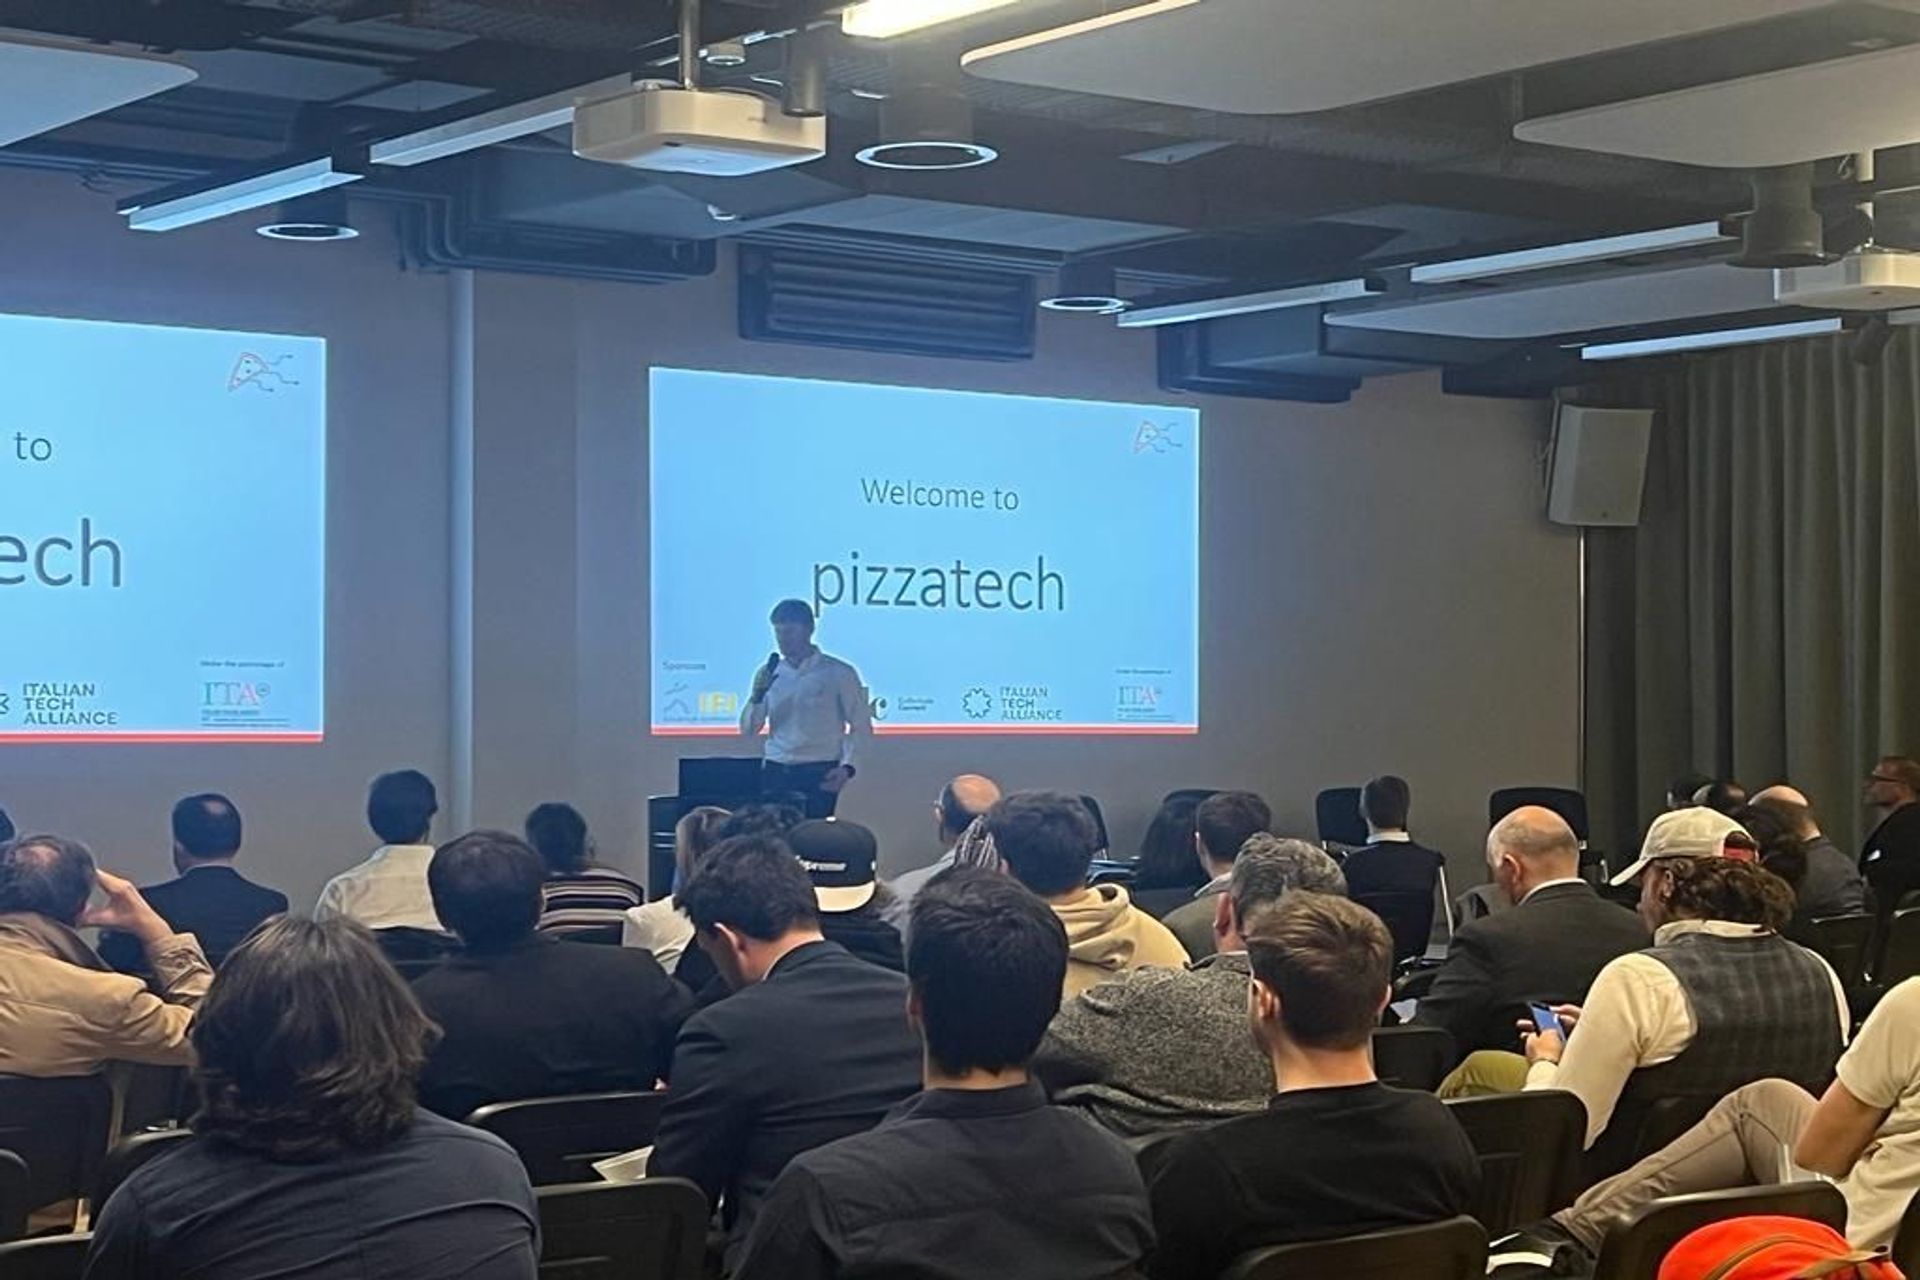 #pizzatech ასოციაციის მიერ ორგანიზებული "Italian Tech Night"-ის პირველი გამოცემა გაიმართა 24 წლის 2022 მარტის საღამოს Startup Space by IFJ-ში შლიერენში, ციურიხის მახლობლად: შესავალი სიტყვა ორგანიზატორის ჯანმარია სბეტას მიერ.